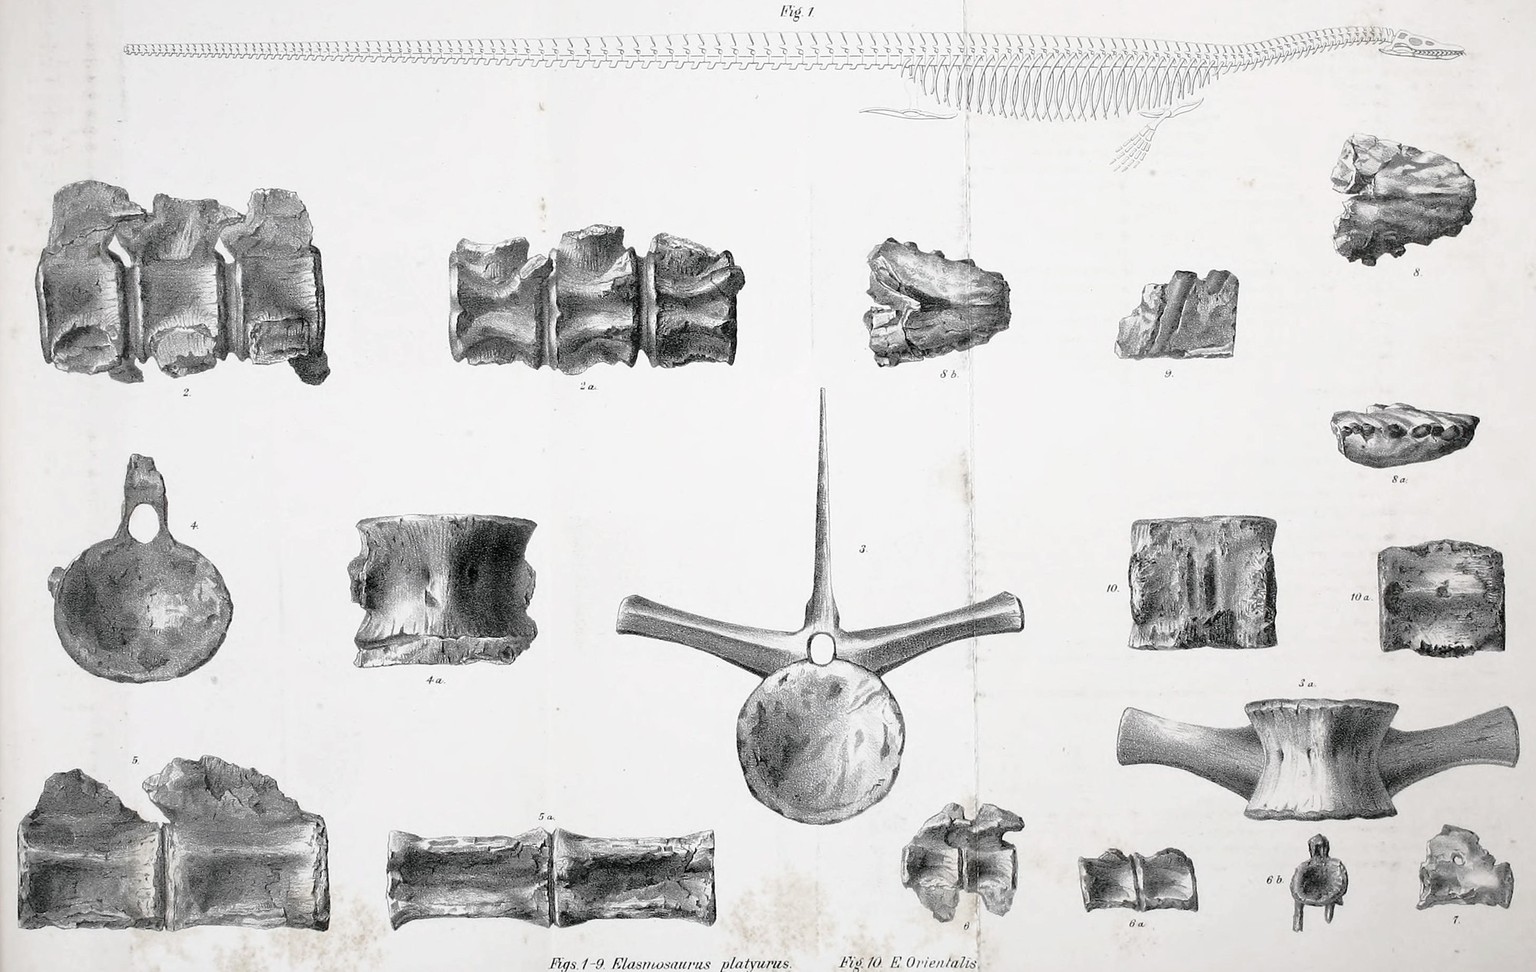 Cope&#039;s 1869 Rekonstruktion von Elasmosaurus oben, mit dem Kopf am falschen Ende und ohne Hinterbeine, und Holotypelemente von E. platyurus (1-9) und E. orientalis (10) unten. 1869